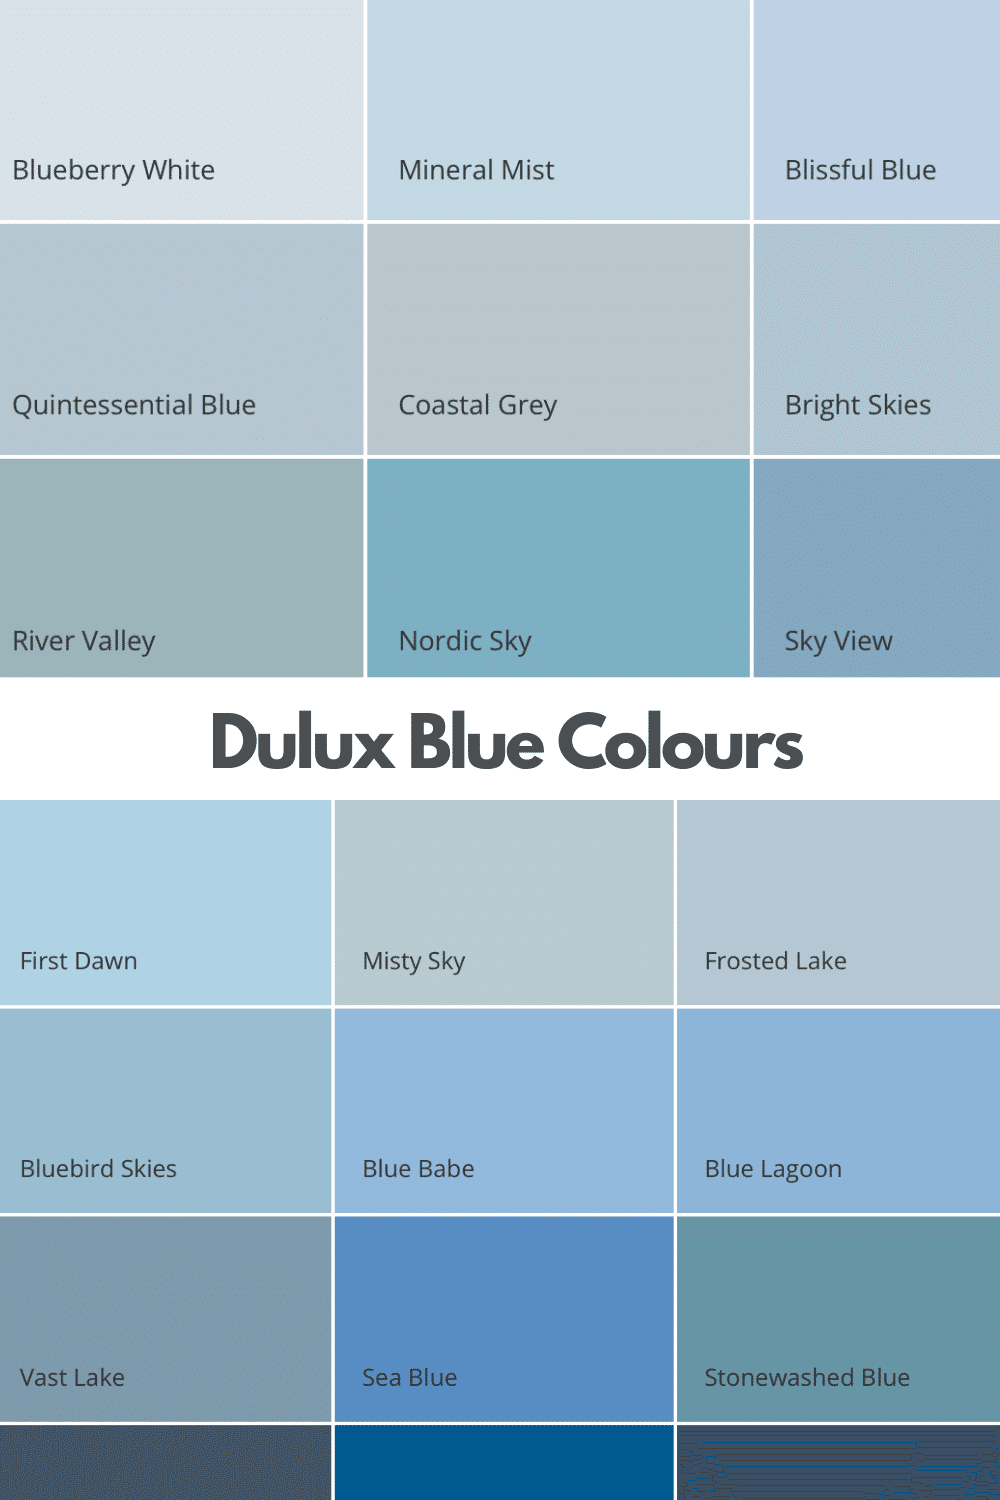 Dulux Blue Colour Chart The Dulux Blue Colours Sleekchic UK Home